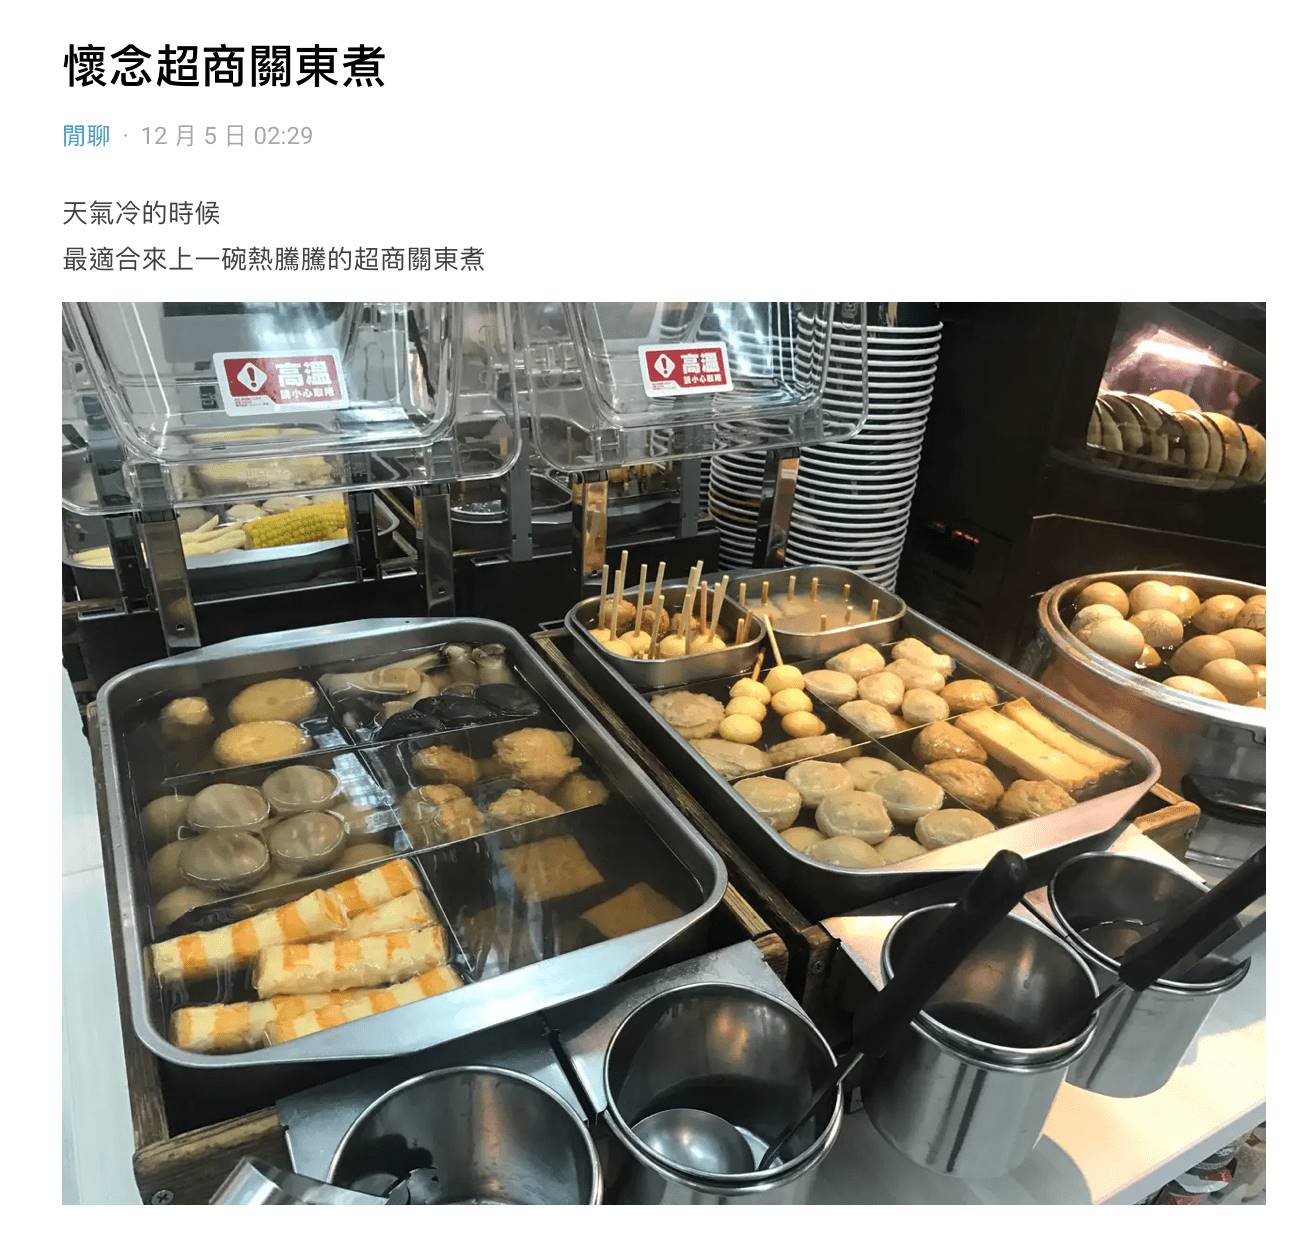 網友透露7-11原有的關東煮因為檔期換成滷味，因此沒辦法喝到原本關東煮高湯。